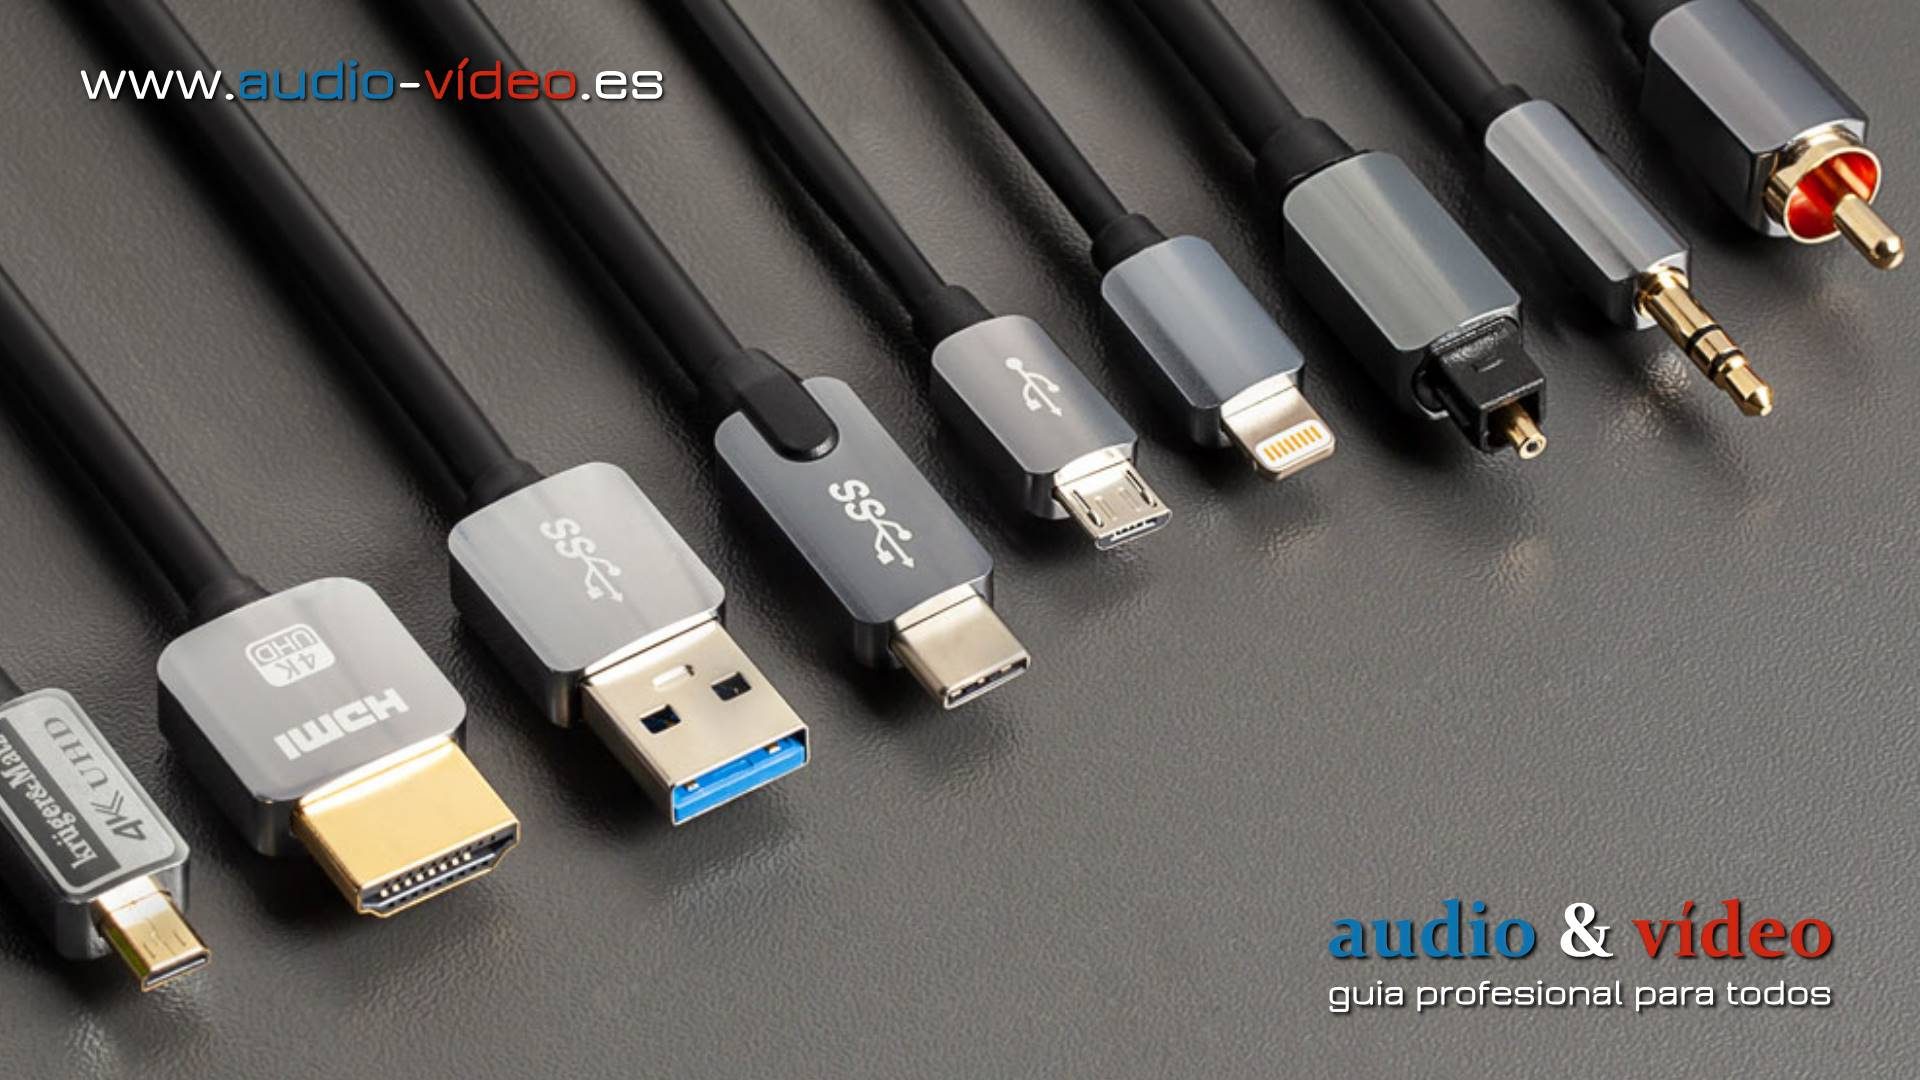 ¿Cuál es la mejor conexión de audio que se puede usar? Coaxial / óptico / HDMI